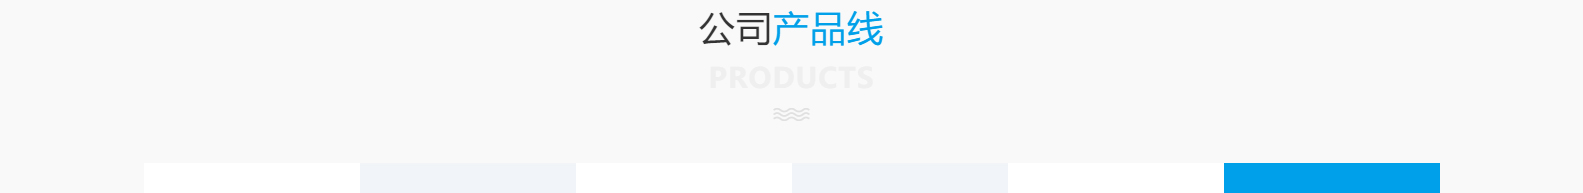 深圳市思达仪表有限公司_网站建设设计案例_响应式型网站制作案例